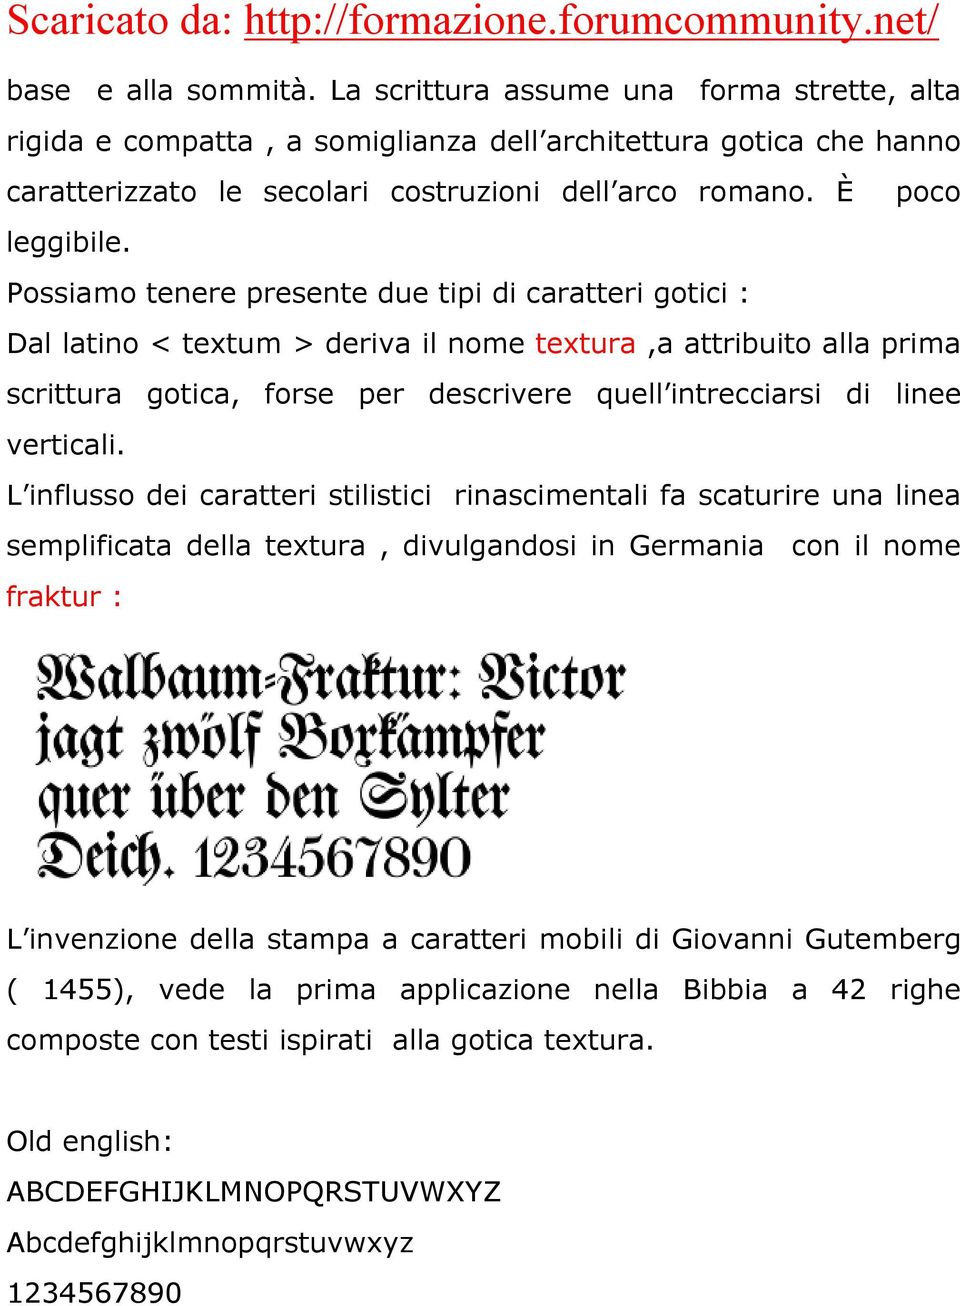 Possiamo tenere presente due tipi di caratteri gotici : Dal latino < textum > deriva il nome textura,a attribuito alla prima scrittura gotica, forse per descrivere quell intrecciarsi di linee